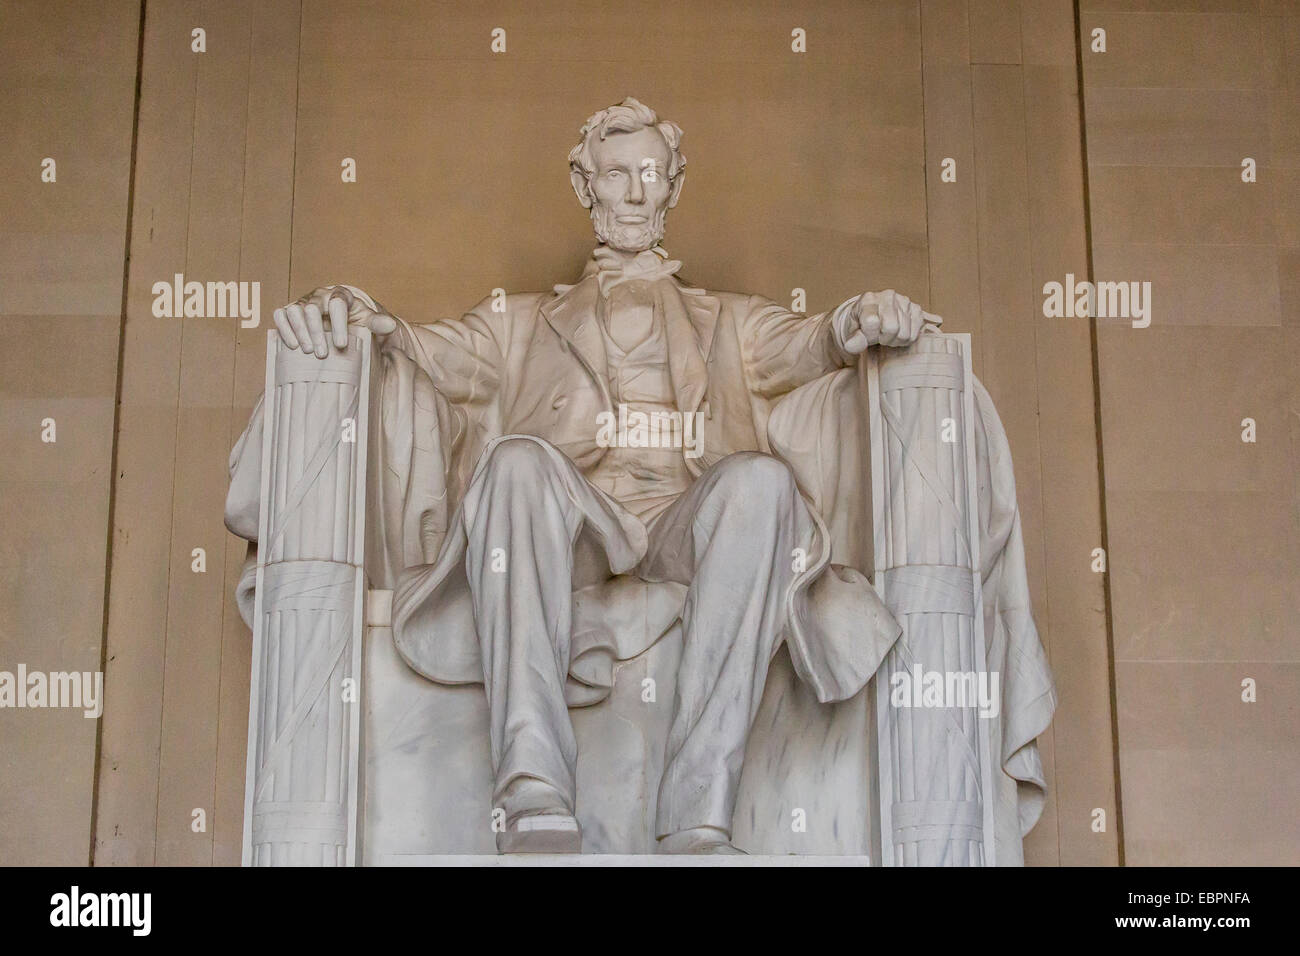 Innenansicht der Lincoln-Statue in der Lincoln Memorial, Washington D.C., Vereinigte Staaten von Amerika, Nordamerika Stockfoto